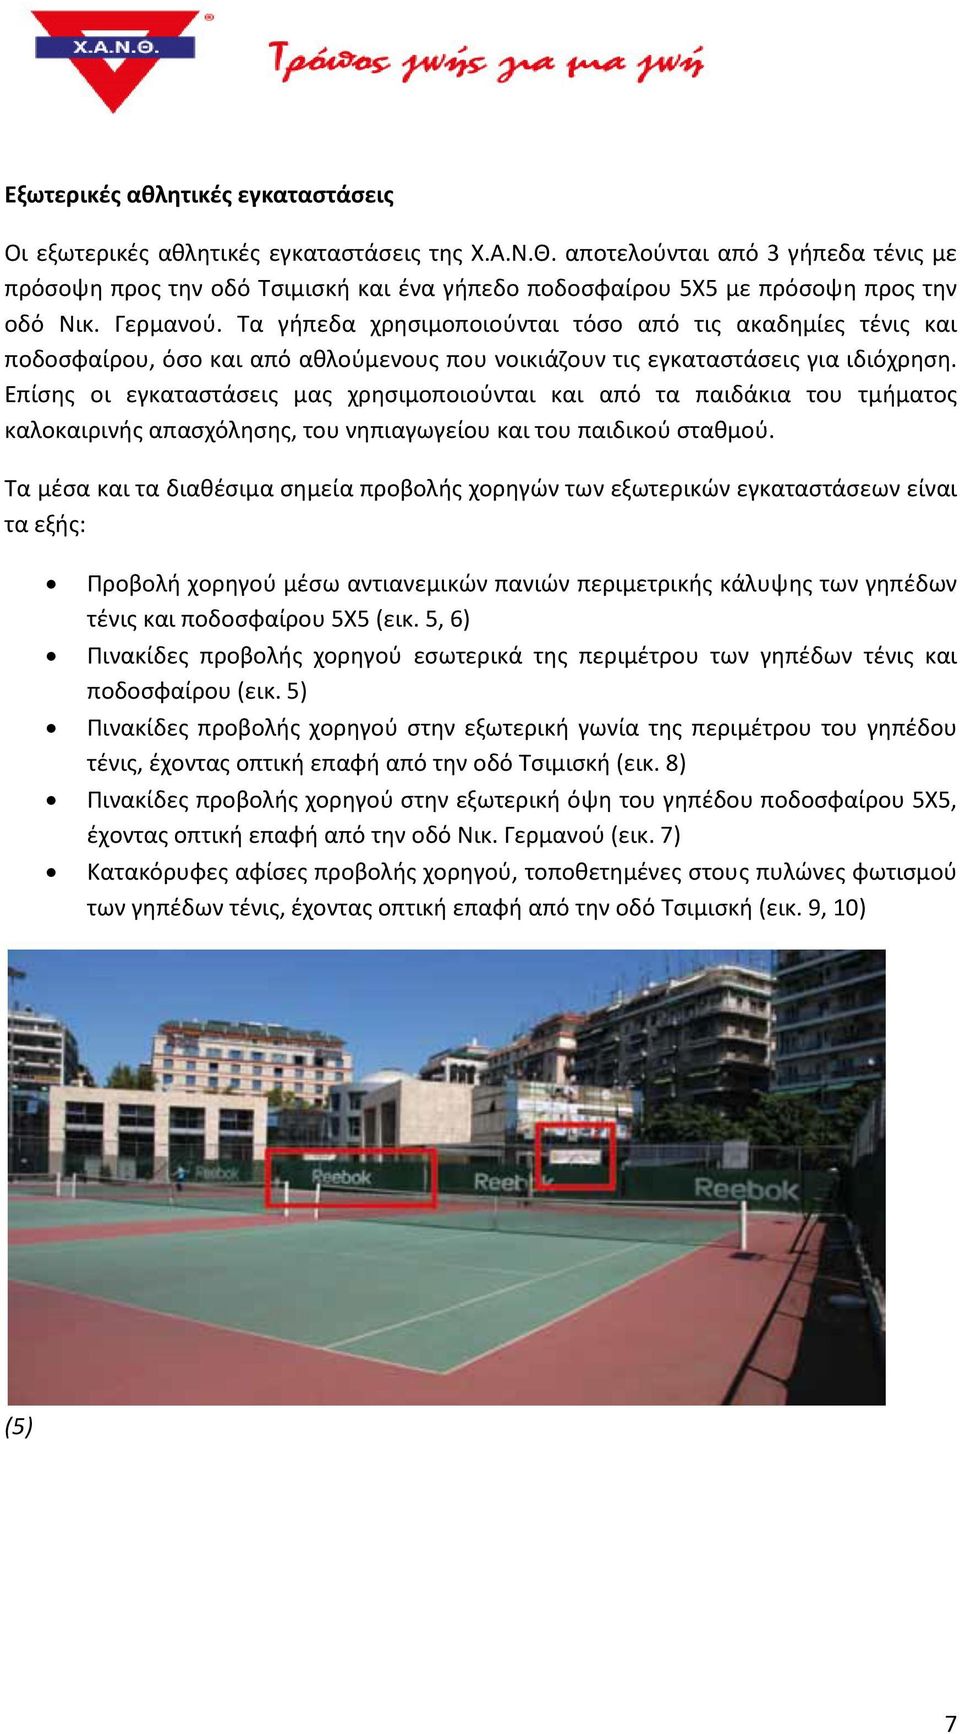 Τα γήπεδα χρησιμοποιούνται τόσο από τις ακαδημίες τένις και ποδοσφαίρου, όσο και από αθλούμενους που νοικιάζουν τις εγκαταστάσεις για ιδιόχρηση.